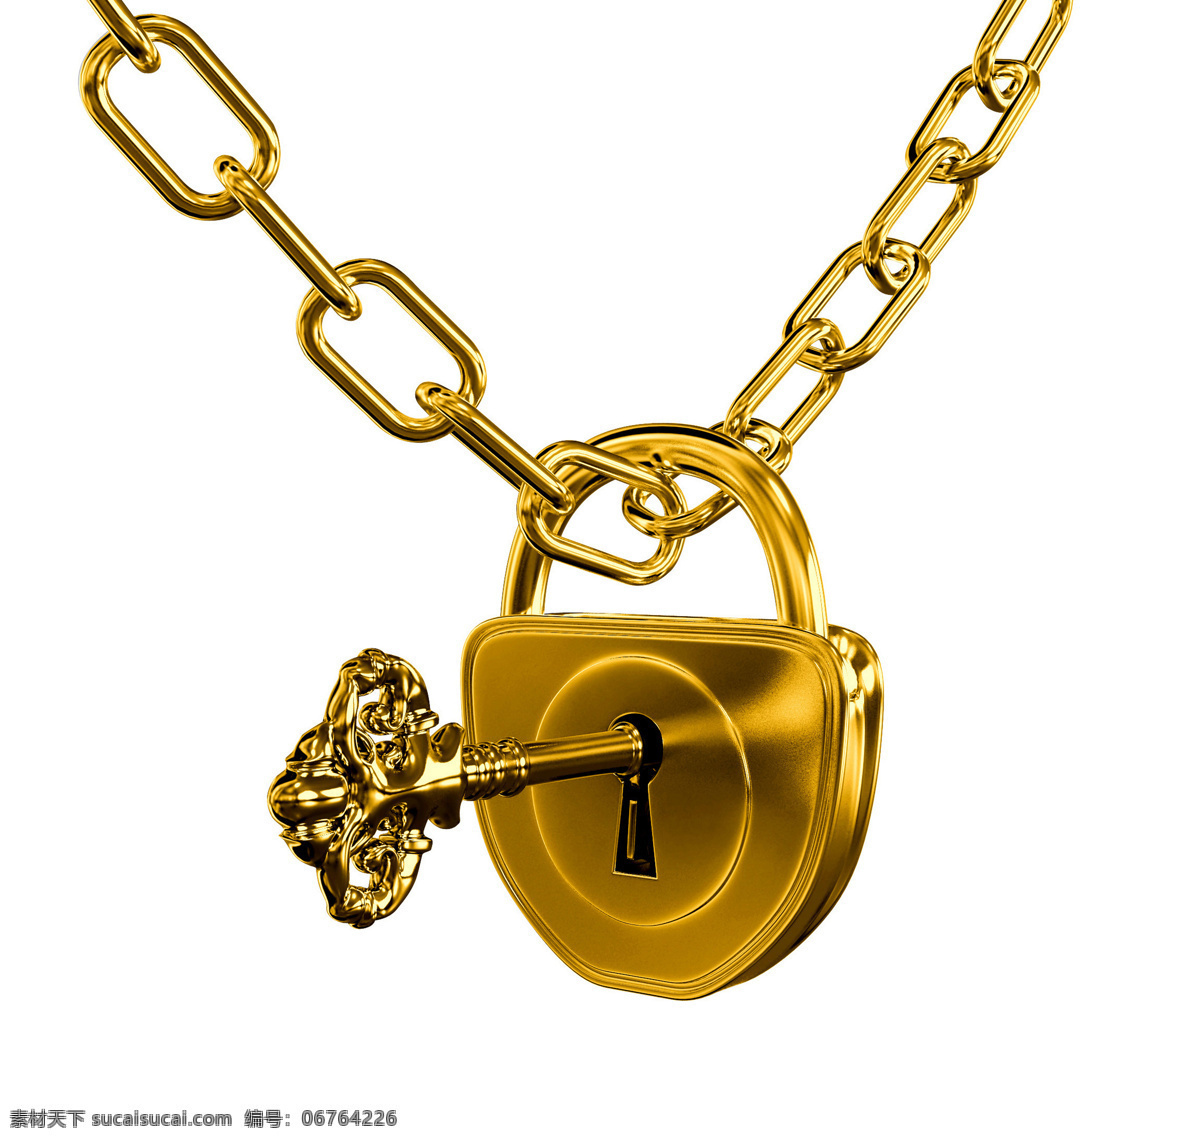 黄金物品 金锁 金钥匙 重金属 金融 商务金融 商务场景